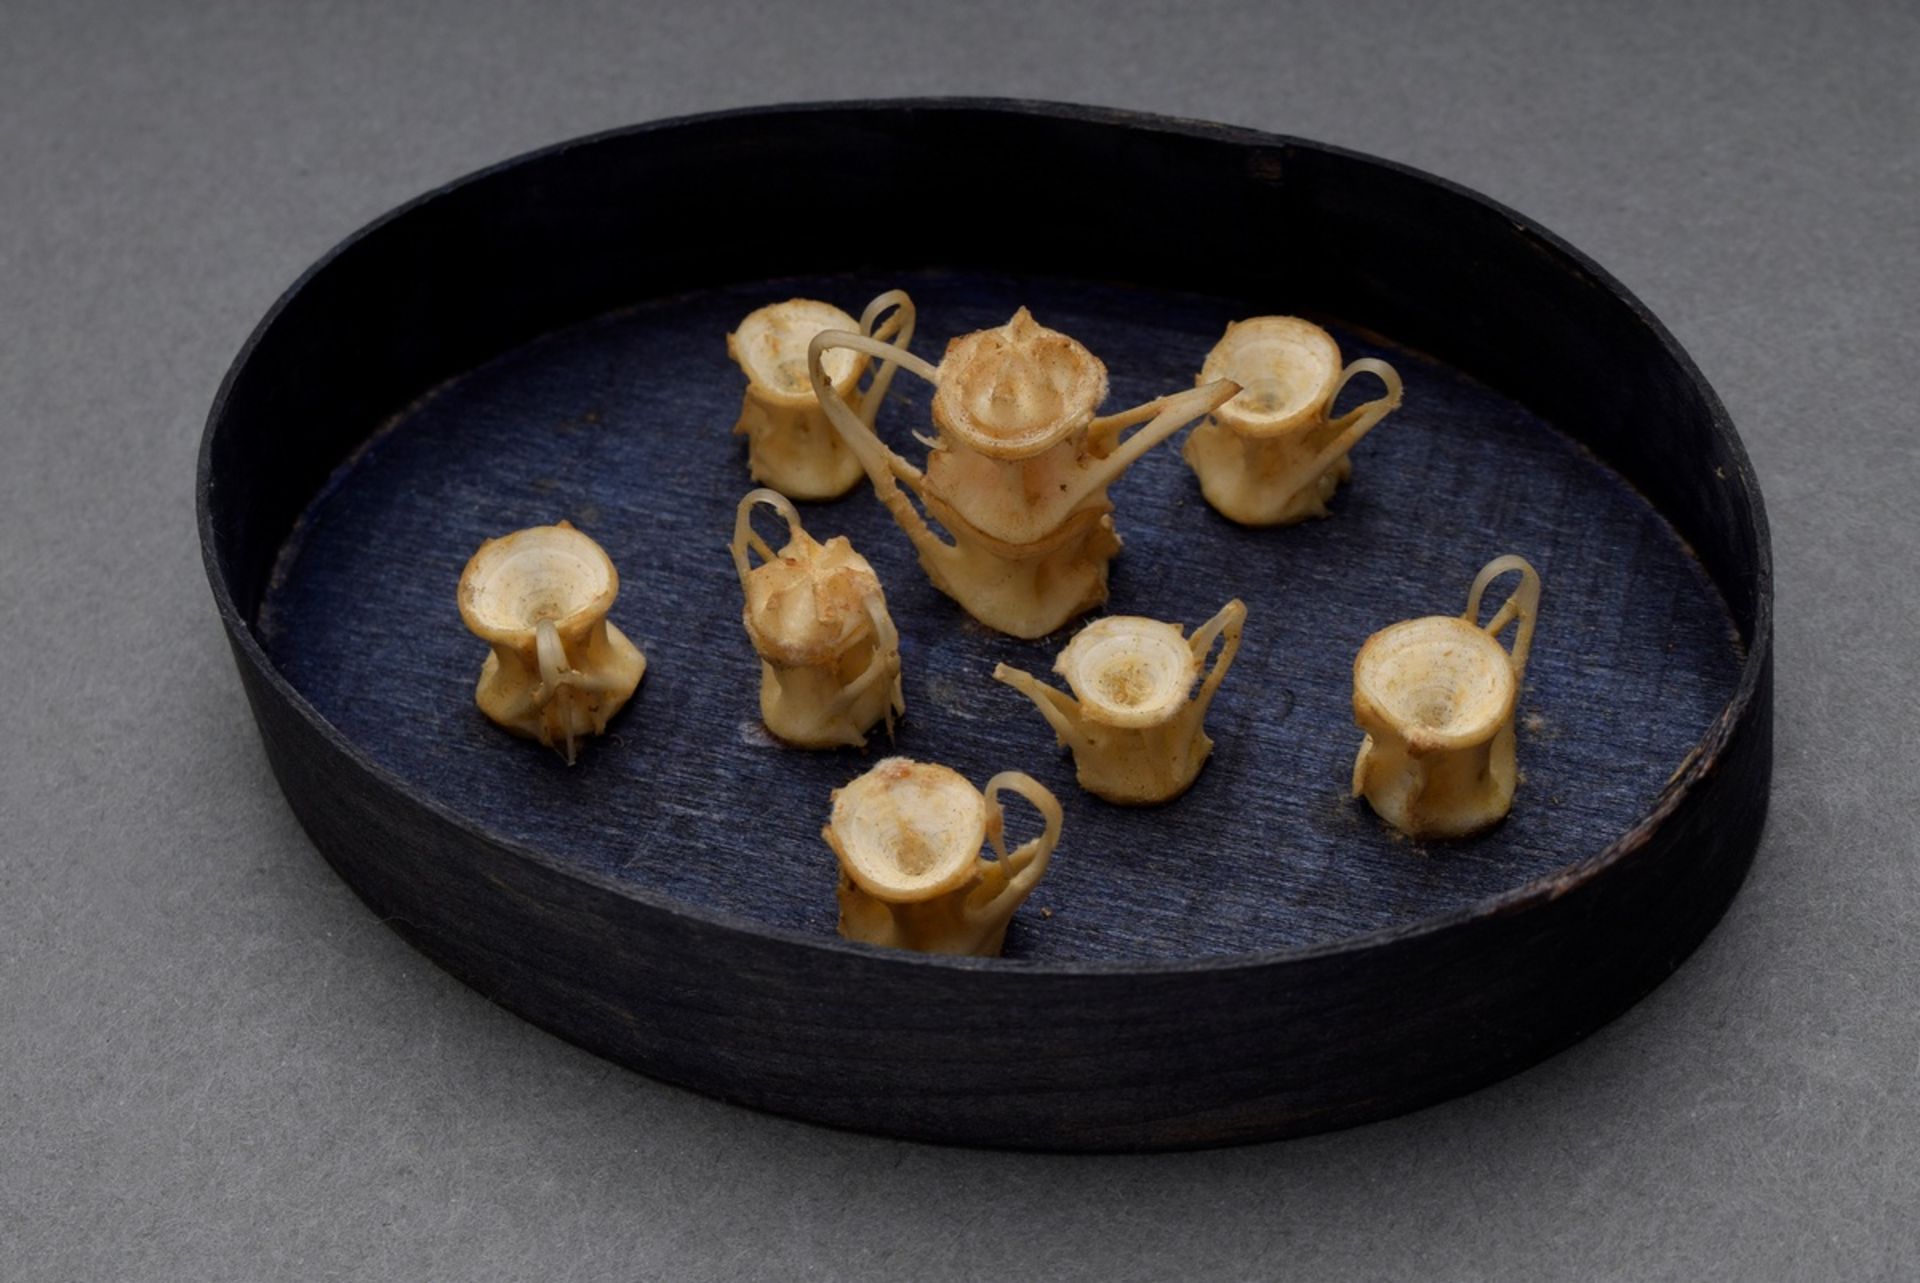 Miniatur Teeservice aus Hai-Wirbelknochen, in Spanschachtel montiert, 3x11x7,5cm (mit Schachtel), l